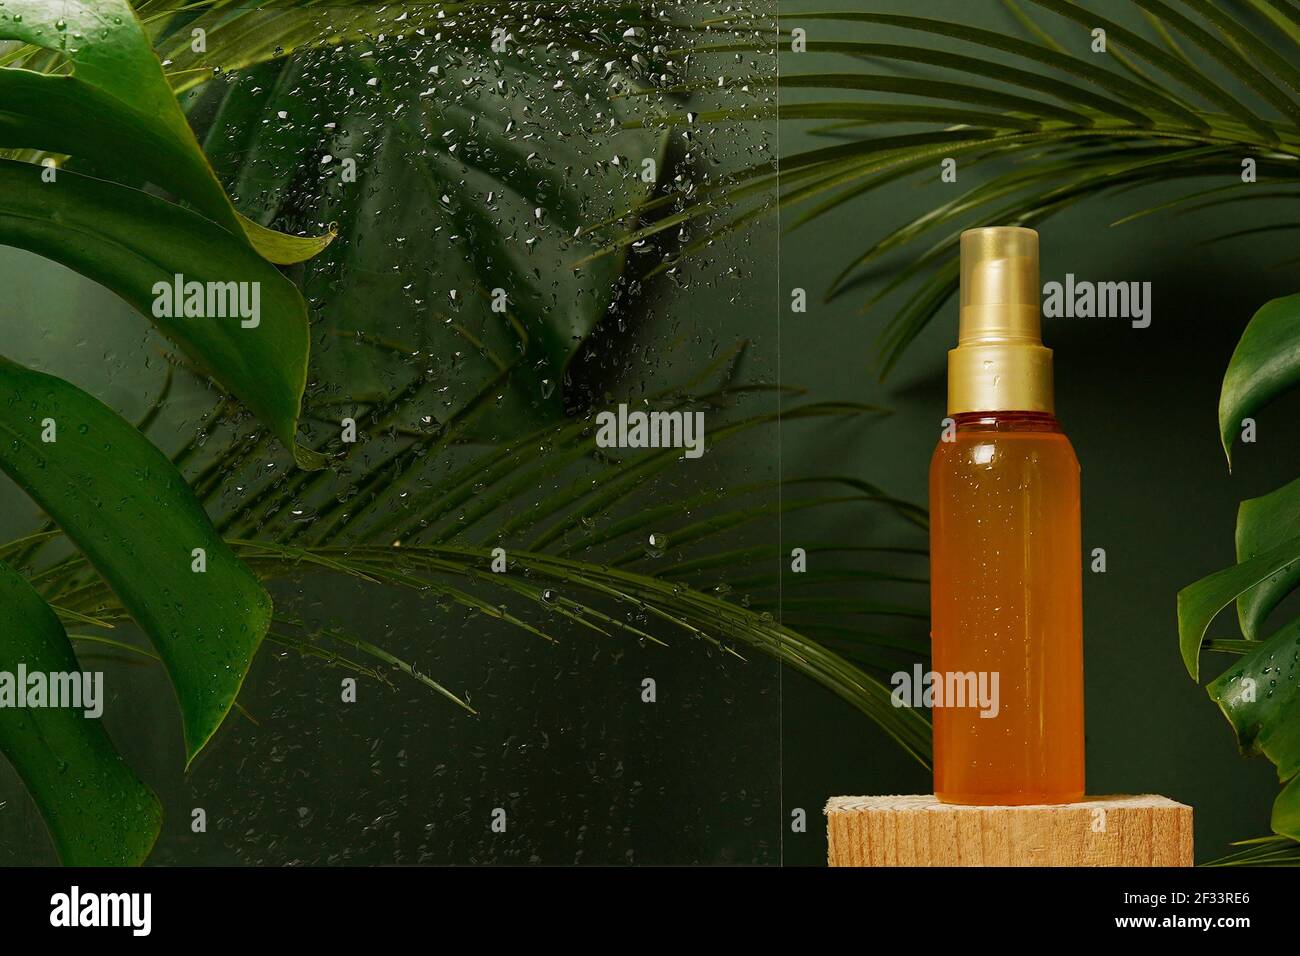 Olio cosmetico fluido siero viso in bottiglia con foglie tropicali verdi fresche e gocce d'acqua su sfondo verde. Sci ecologico naturale di bellezza Foto Stock